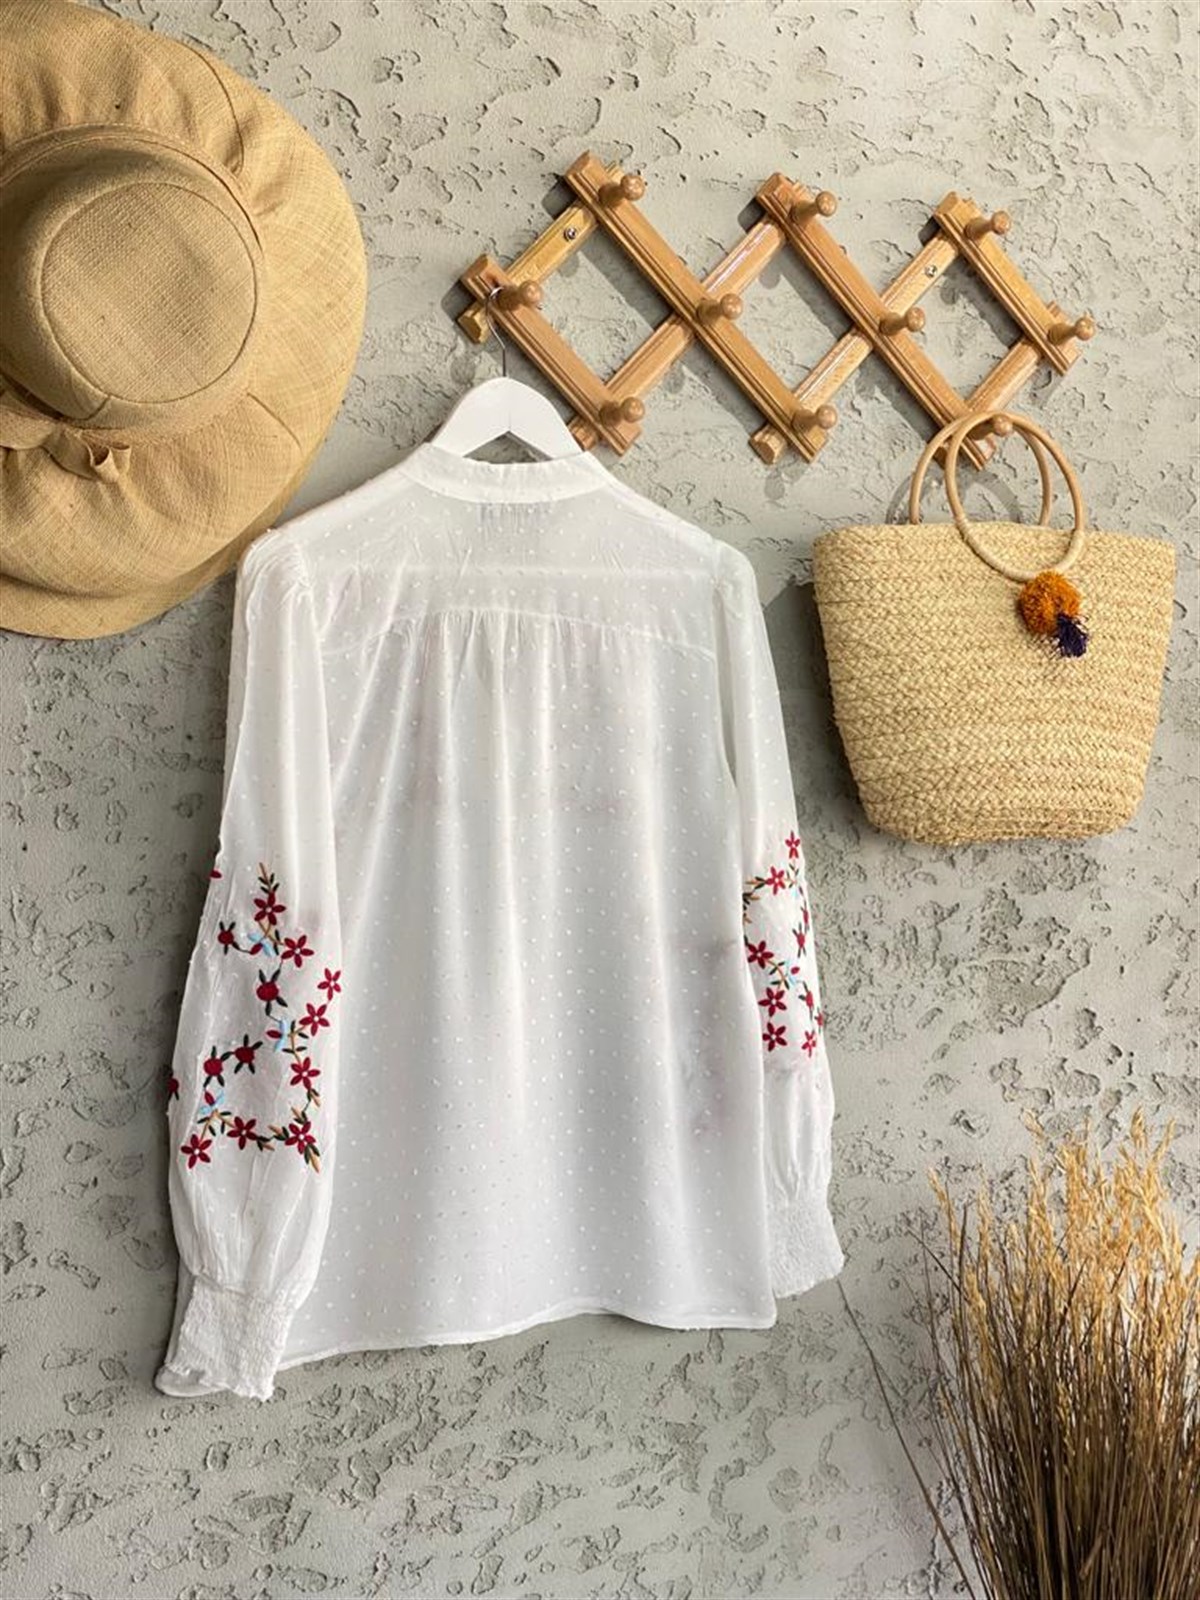 Alaçatı Nar Çiçeği İşlemeli Gömlek (Beyaz) 279,99 ₺